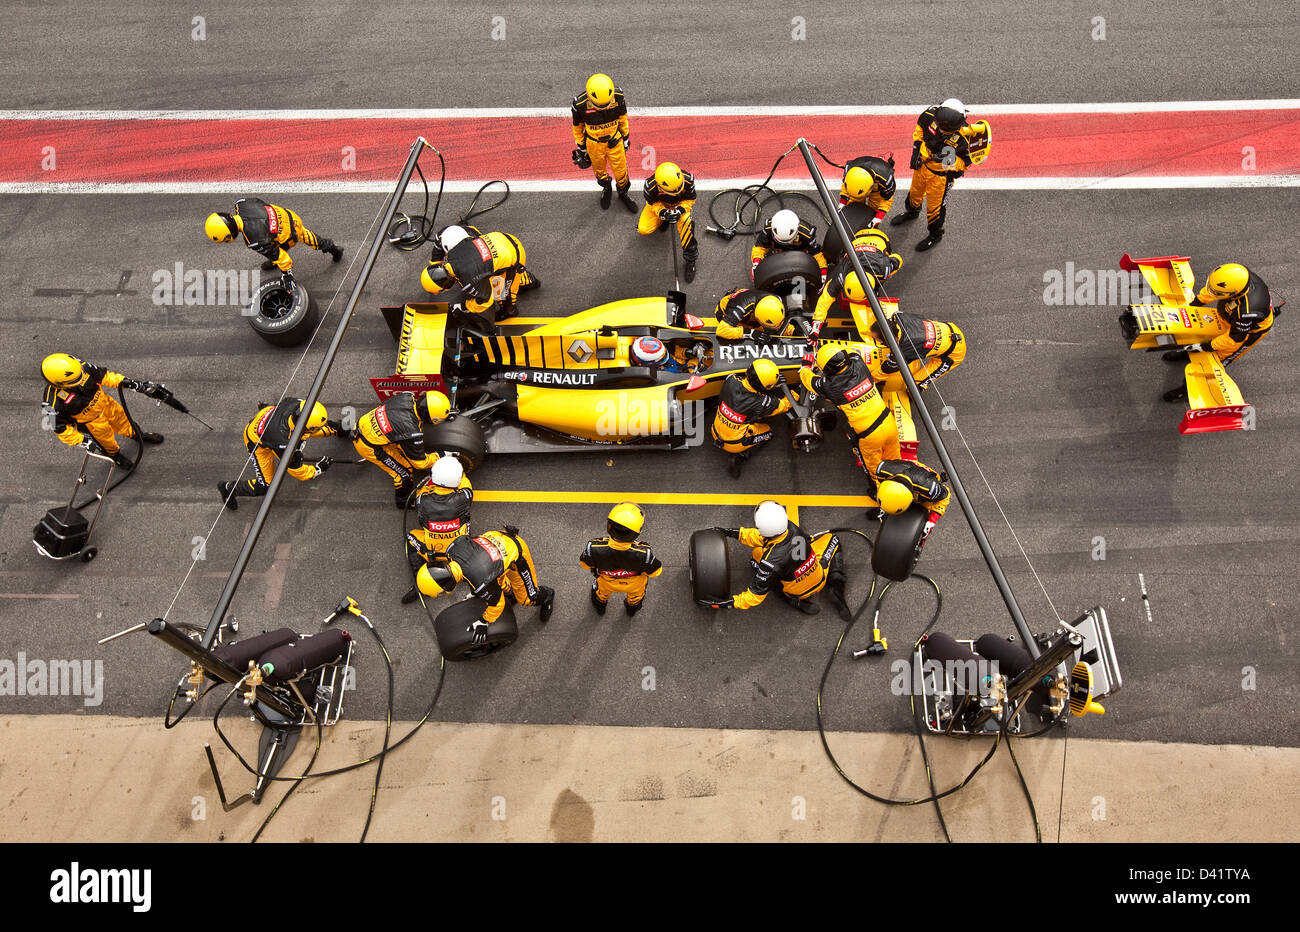 Formel 1 Boxenstopp, Barcelona, 27 02 10 Stockfoto